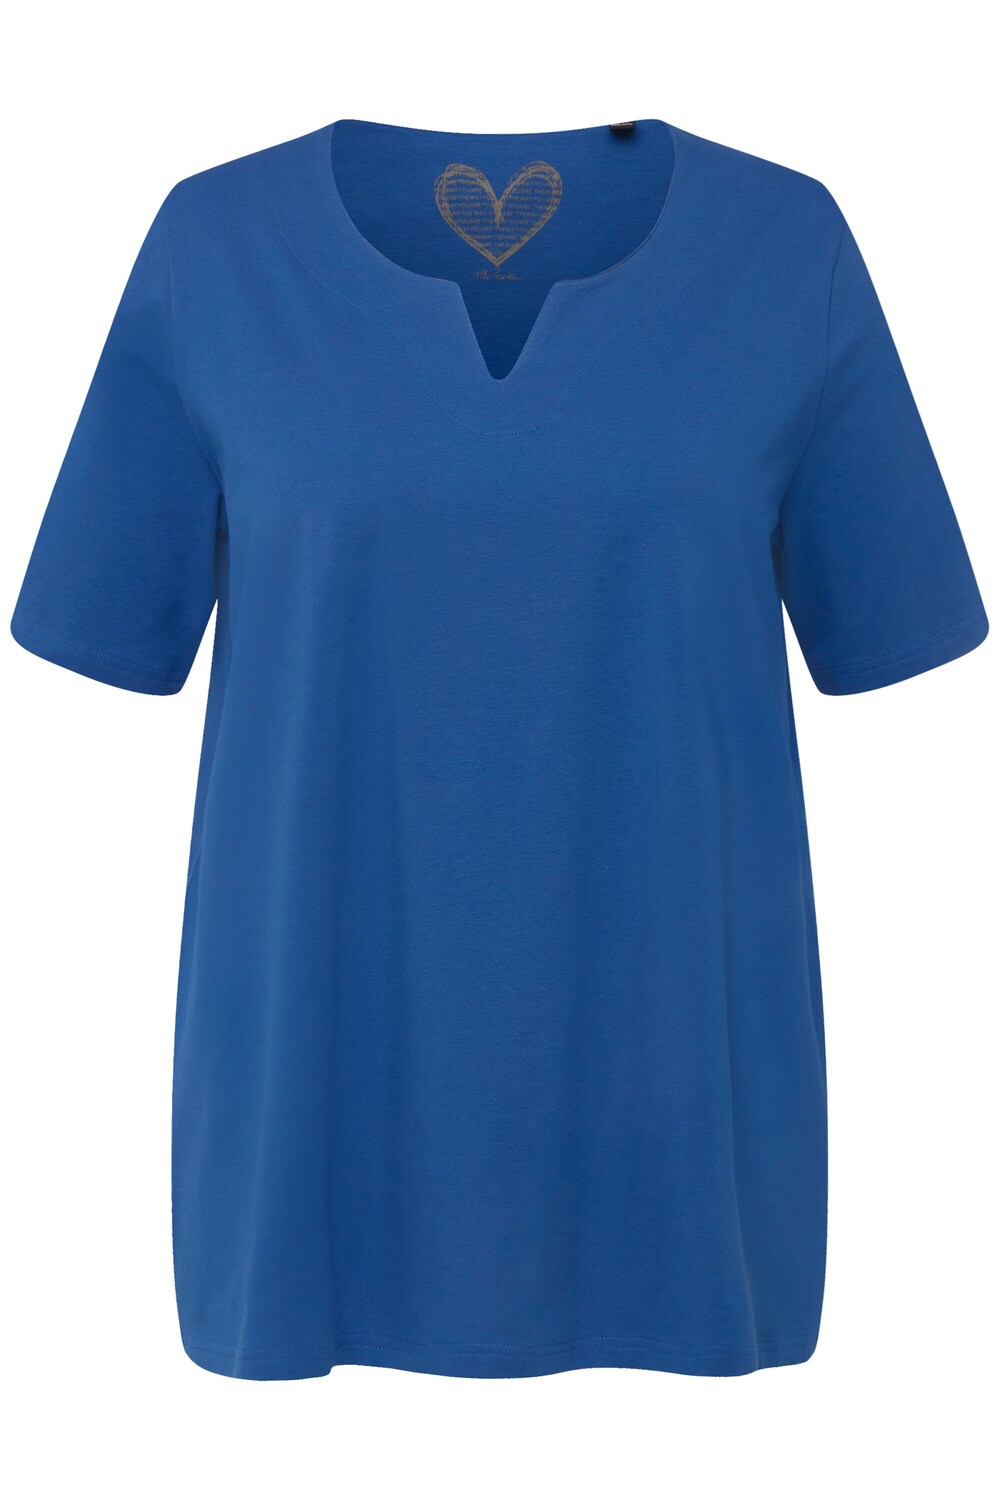 Рубашка Ulla Popken, темно-синий рубашка платье ulla popken темно синий